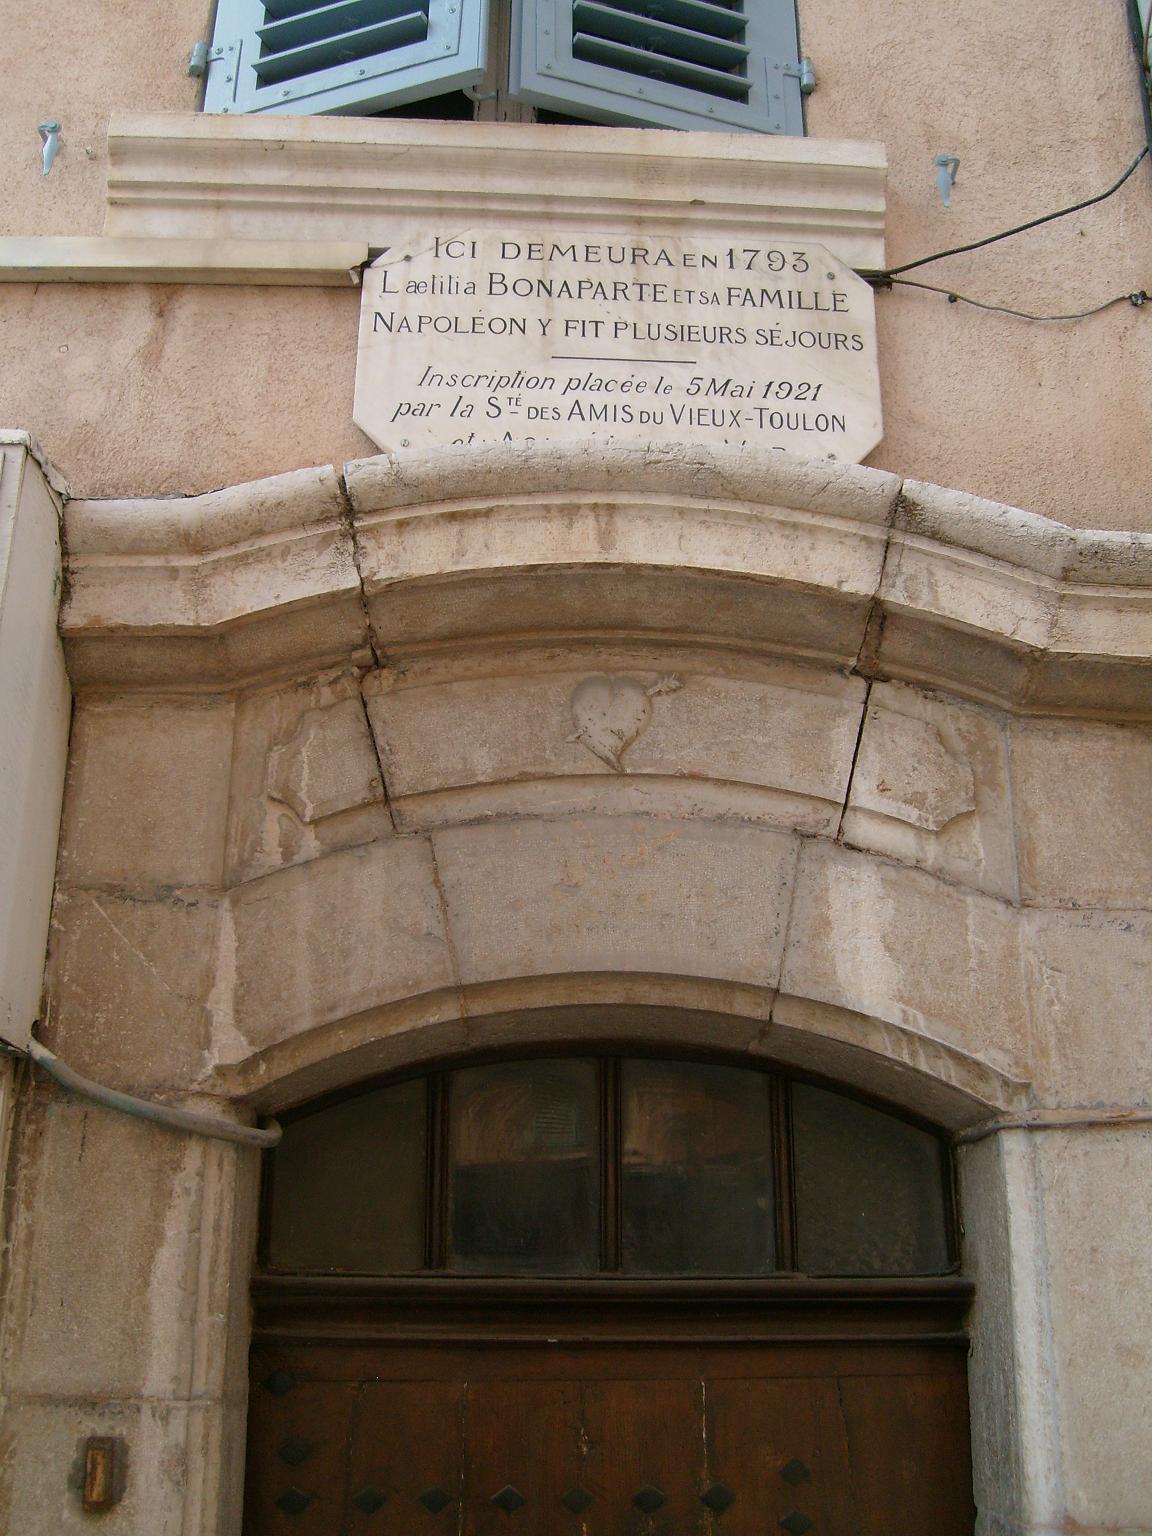 10/01/2010, La Valette: oud pand in oude centrum.
Tekst boven deur vermeldt: In 1793 woonde 
hier Laetitia Bonaparte met haar gezin.
Napoleon logeerde hier meerdere keren.